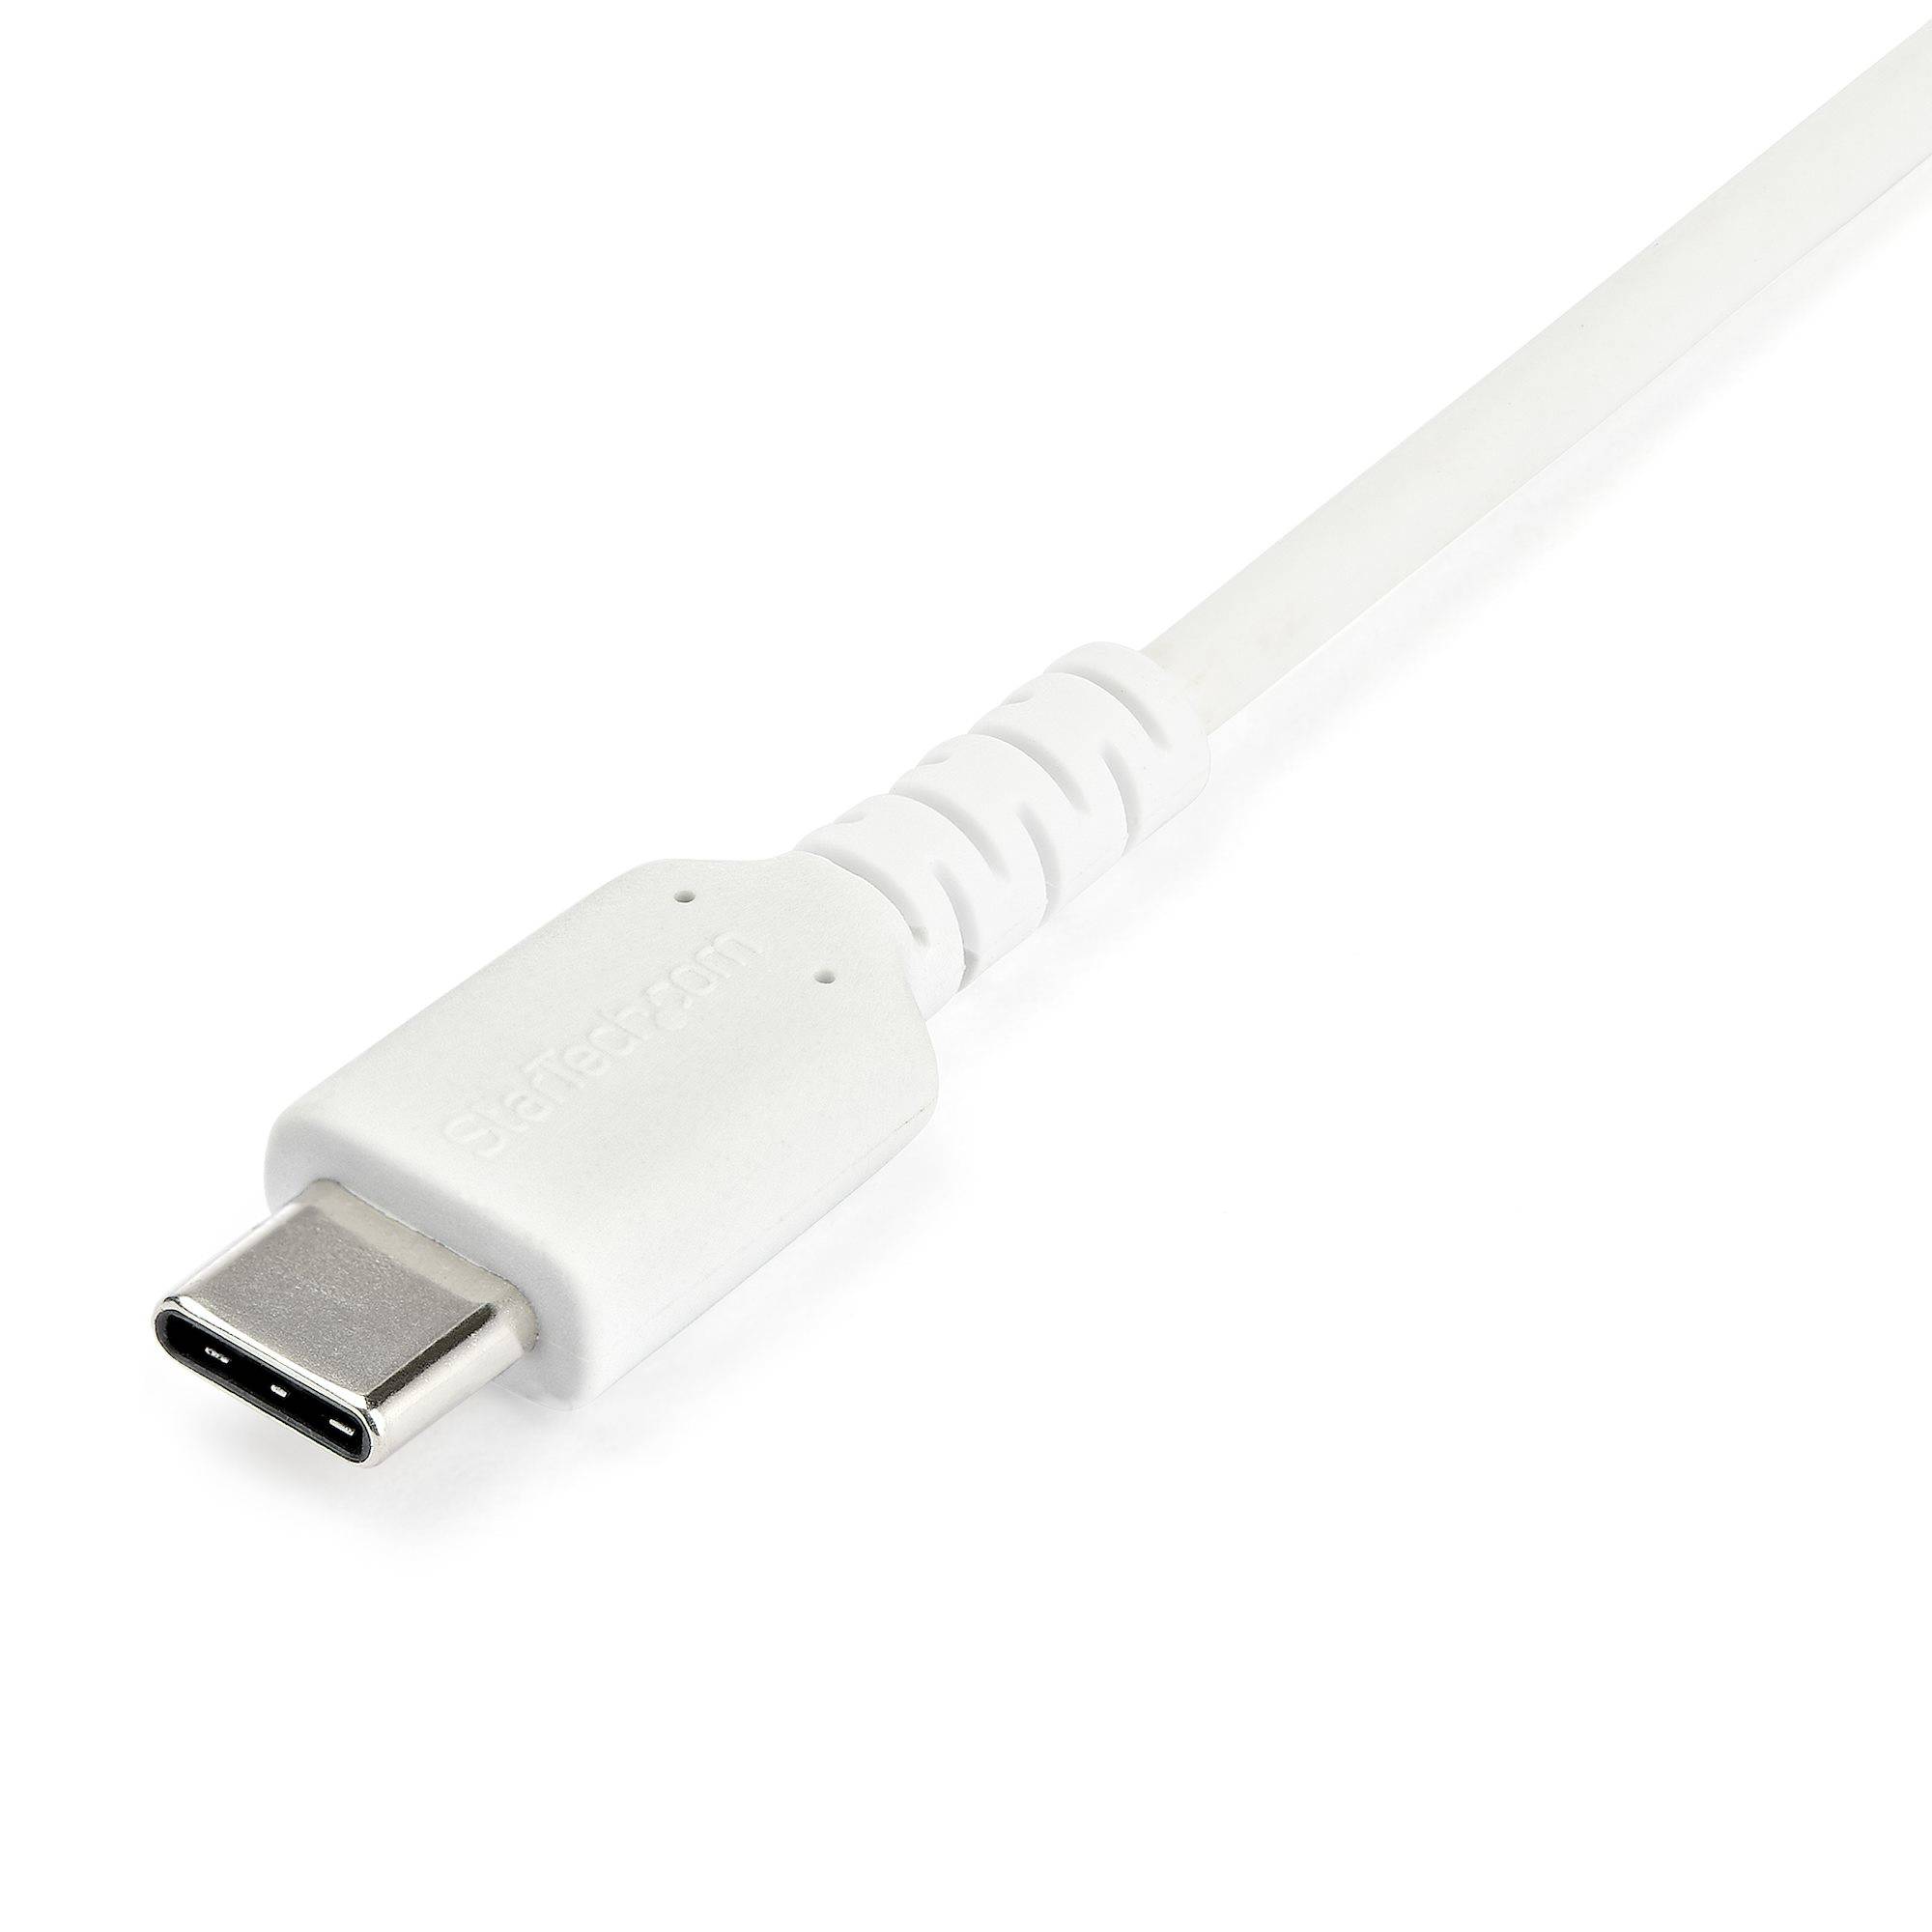 Rca Informatique - image du produit : 1M DURABLE USB 2.0 TO USB C CABLE WHITE ARAMID FIBER